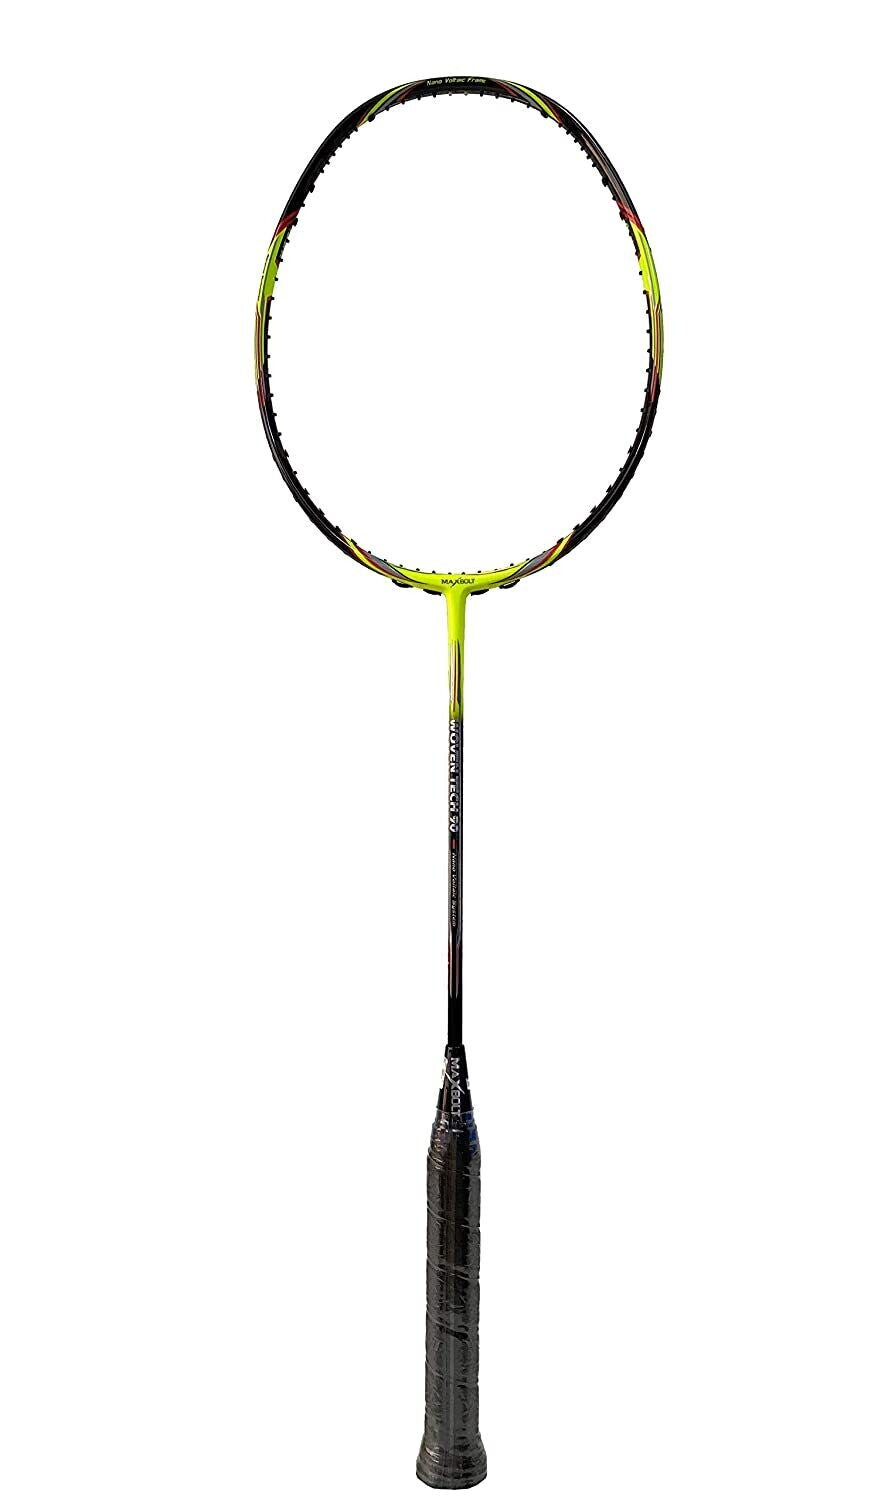 Maxbolt Woven Tech 90 Badminton Racket - Neon Green